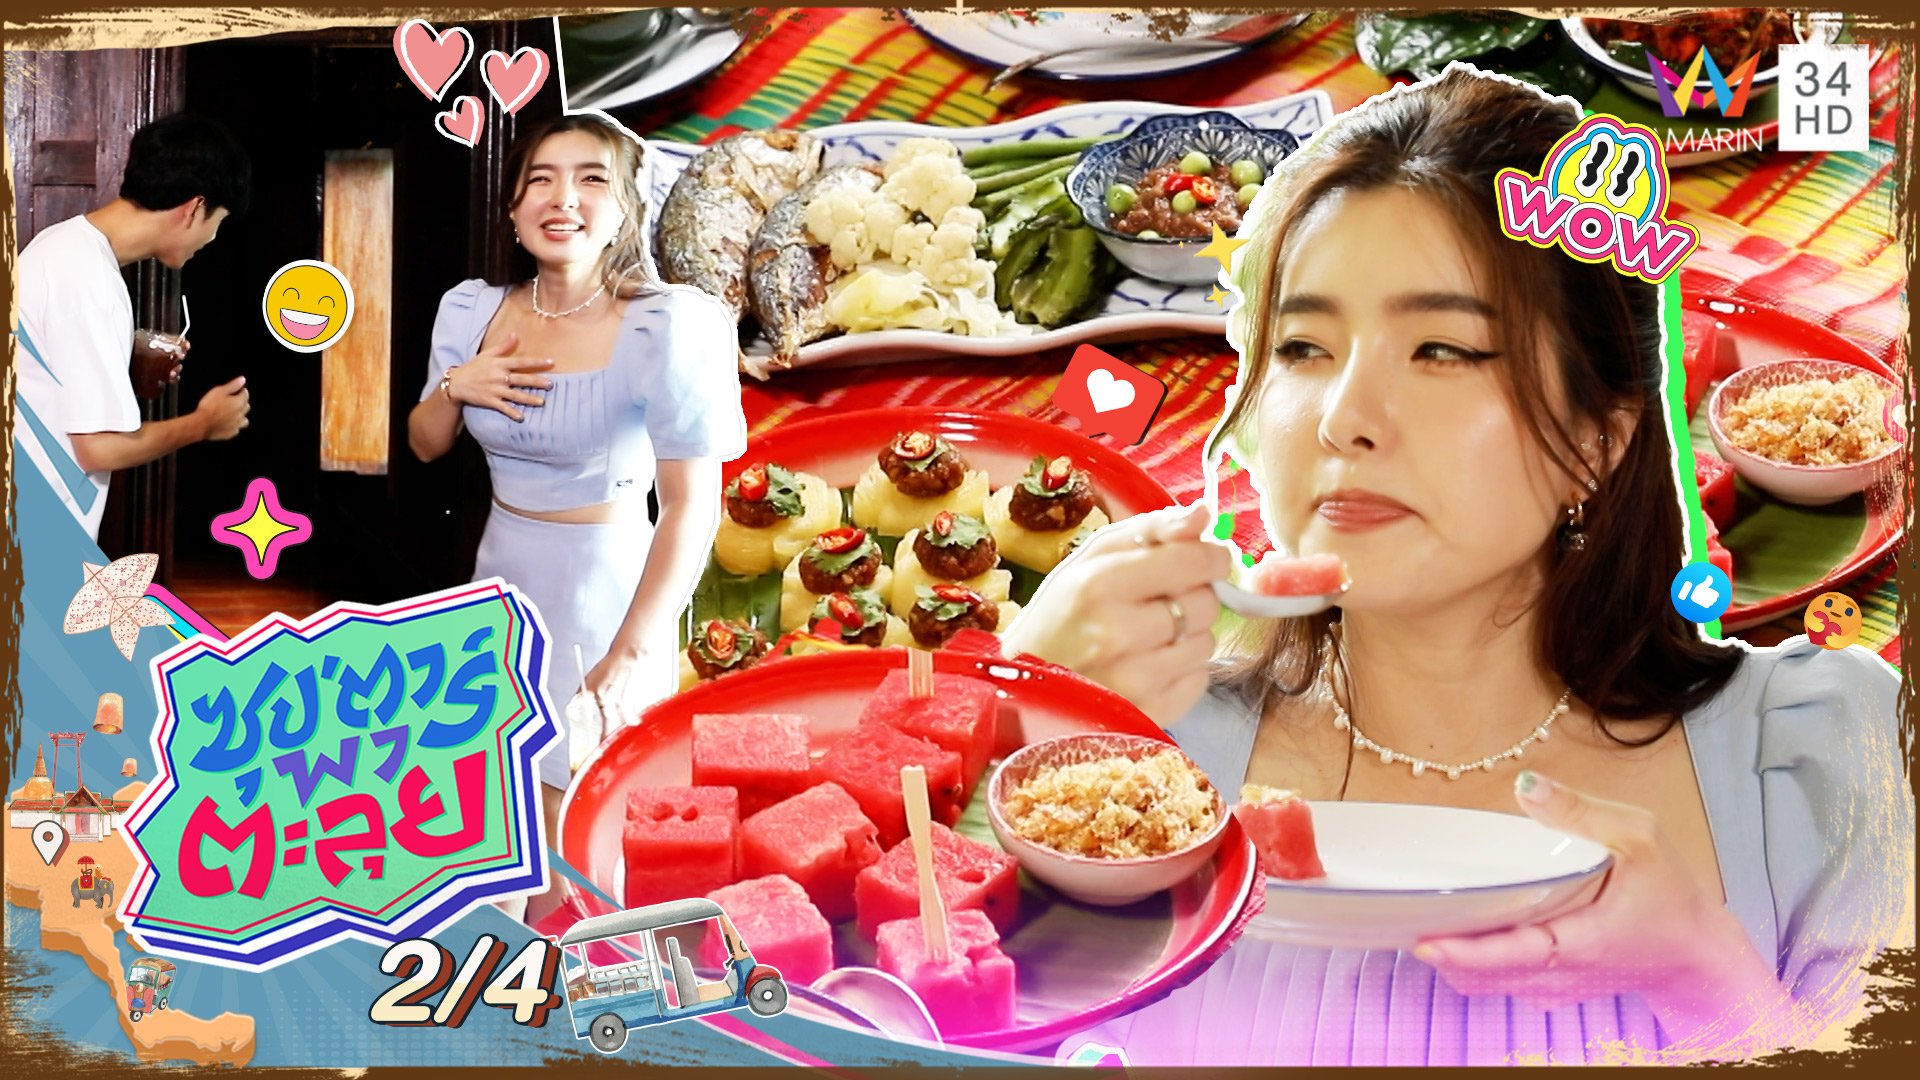 "จียอน" ตะลุยชมบ้านเรือนไทย พร้อมกินอาหารไทยโบราณ | ซุปตาร์พาตะลุย | 25 ส.ค. 65 (2/4) | AMARIN TVHD34